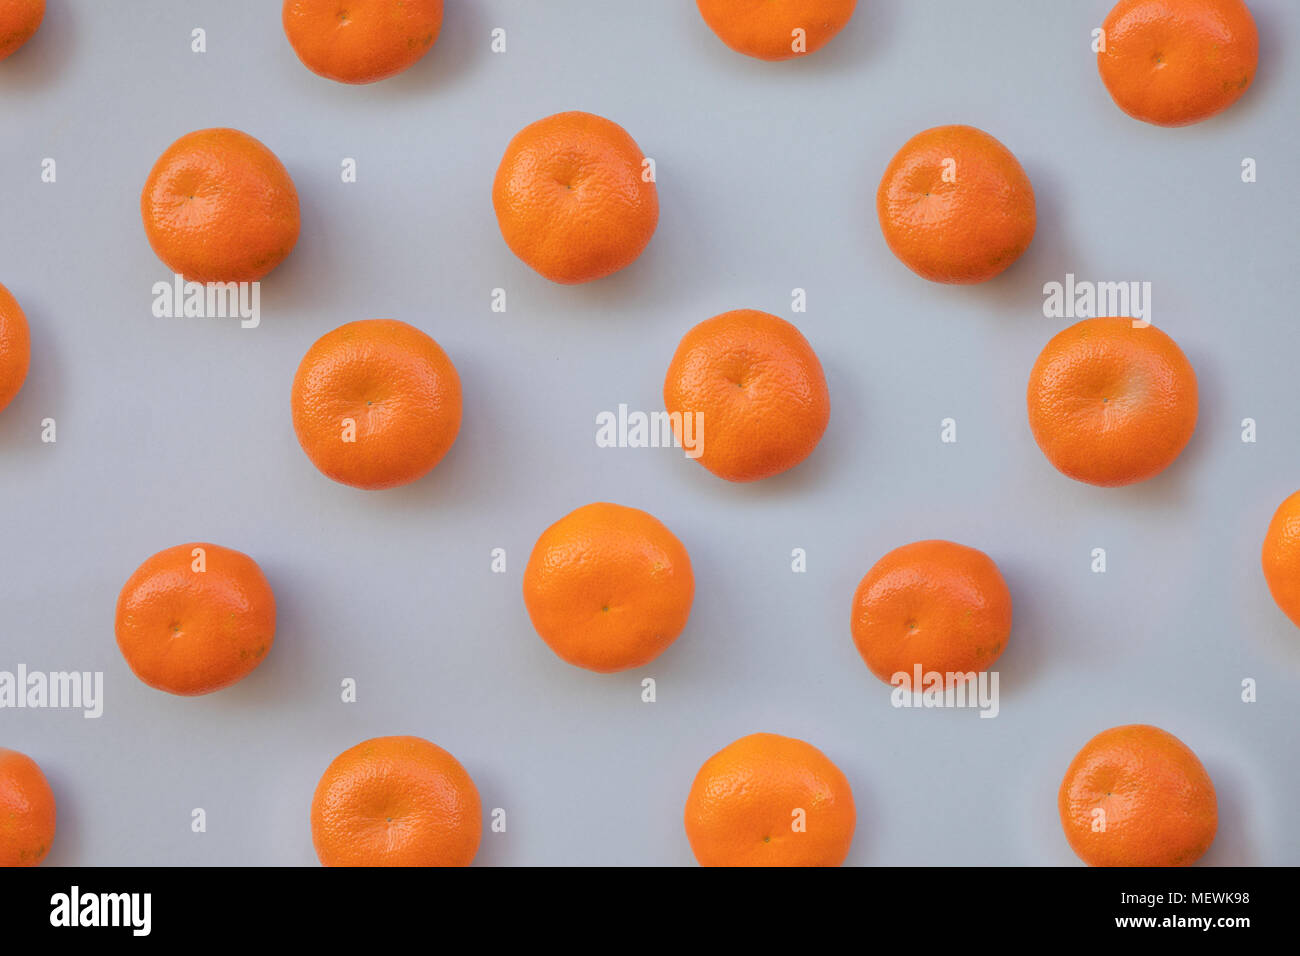 Fresh orange tangerine on grey background Stock Photo